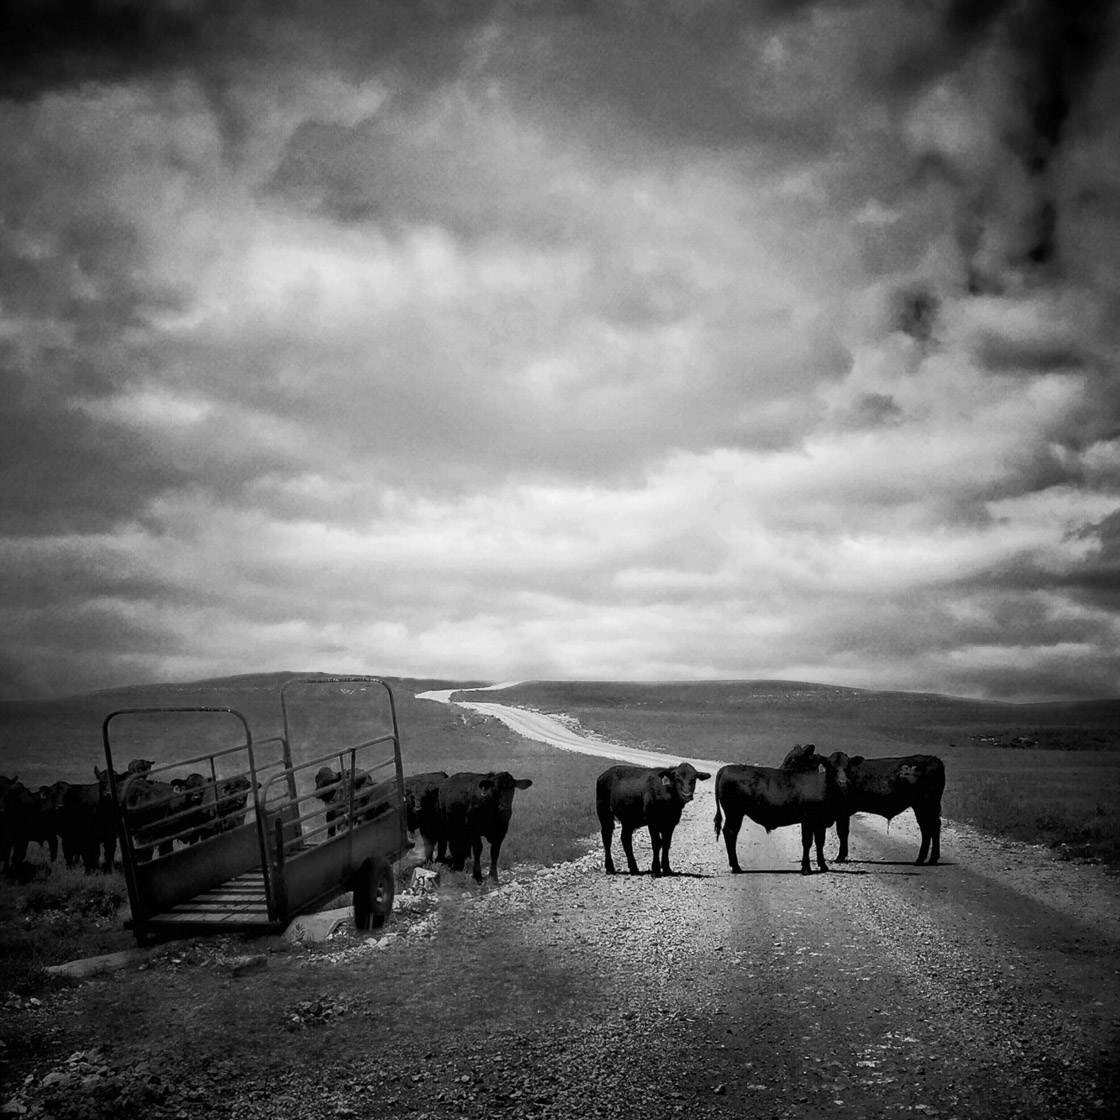 Rural landscape photography 18 no script